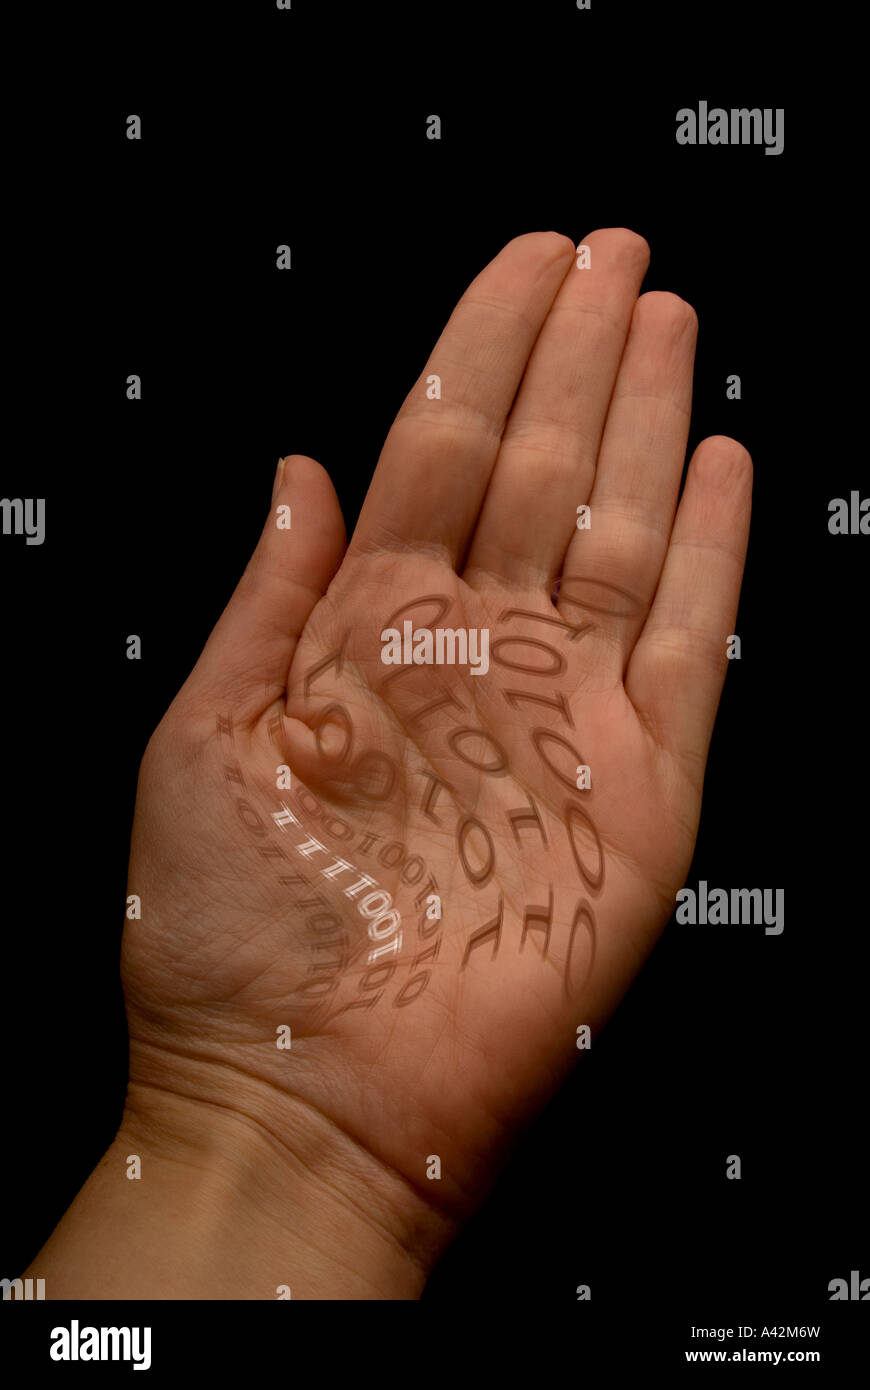 La mano humana con código binario en palm Foto de stock